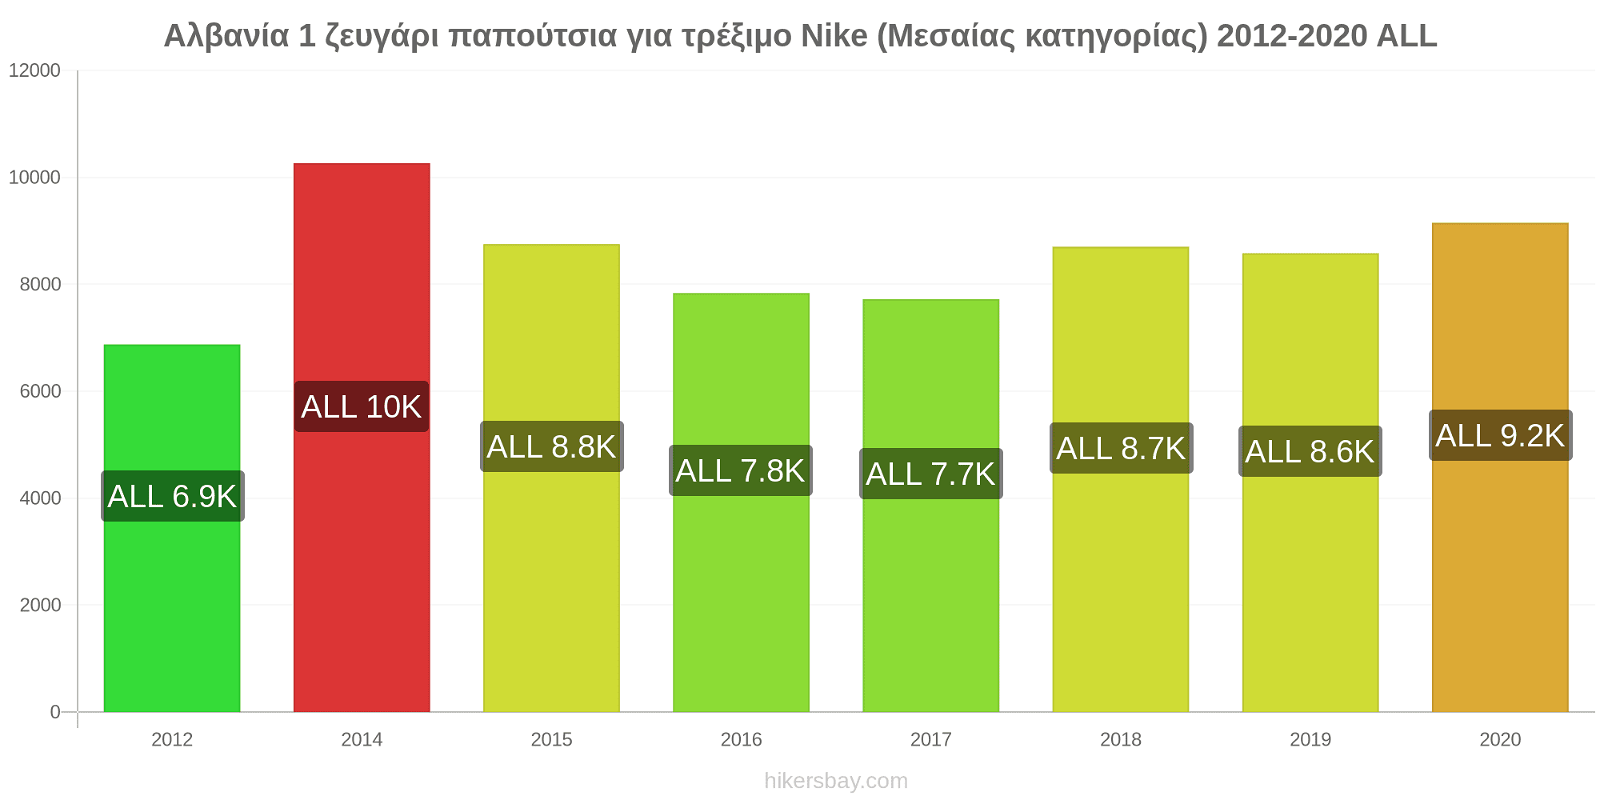 Αλβανία αλλαγές τιμών 1 ζευγάρι παπούτσια για τρέξιμο Nike (Μεσαίας κατηγορίας) hikersbay.com